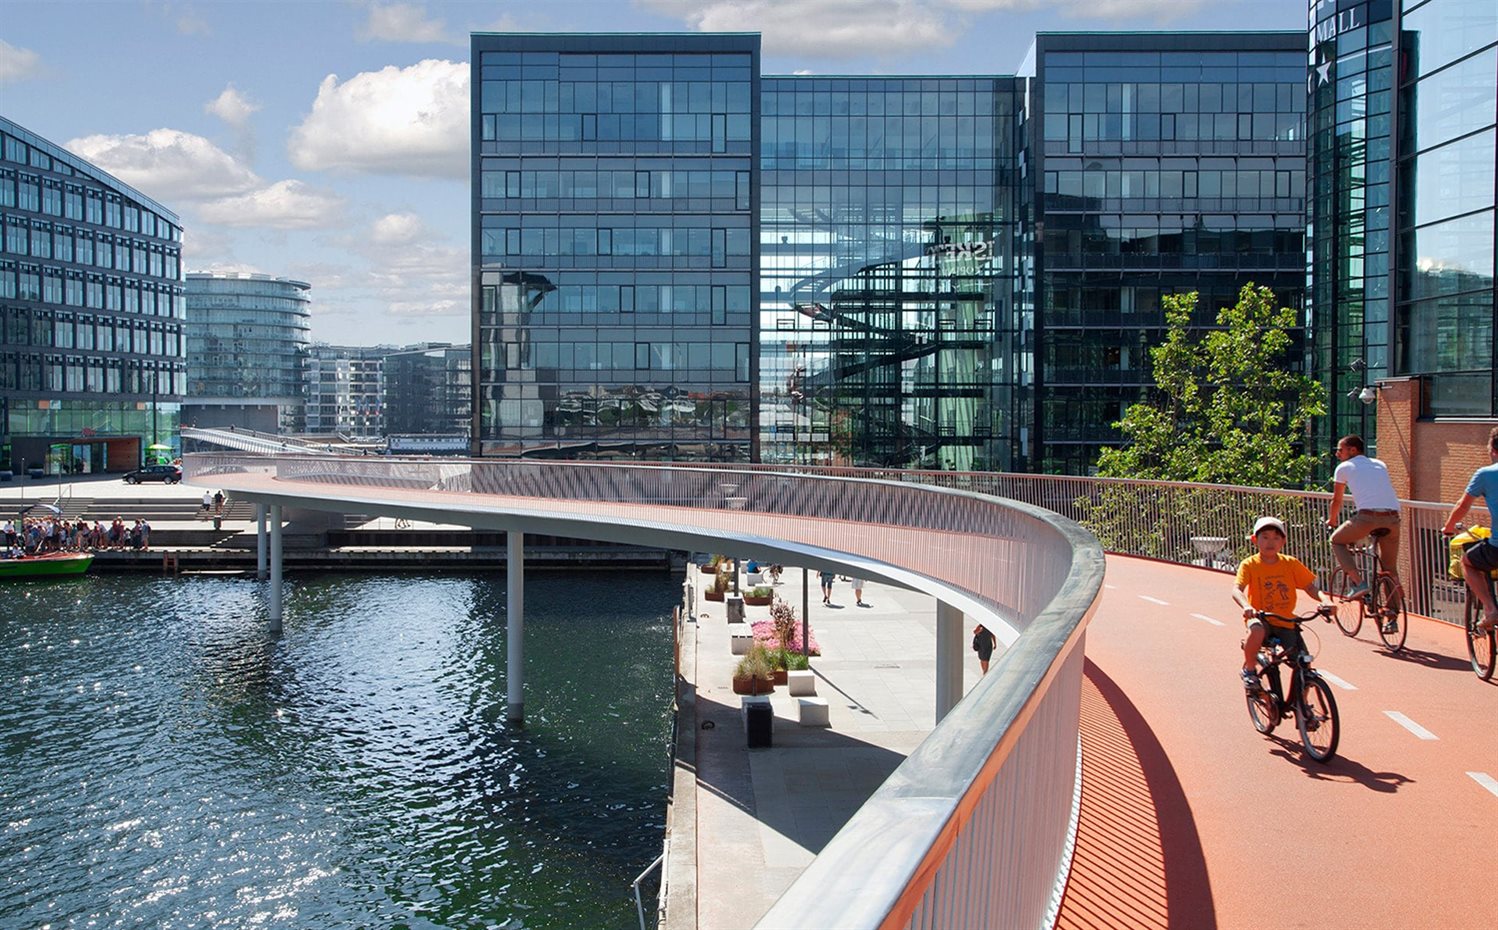 biking-lane-in-copenhagen. Copenhague lidera el esfuerzo de las ciudades europeas por implantar modelos de Smart City. Entre otras acciones, la capital danesa ha implementado una infraestructura de energía renovable basada en la descentralización